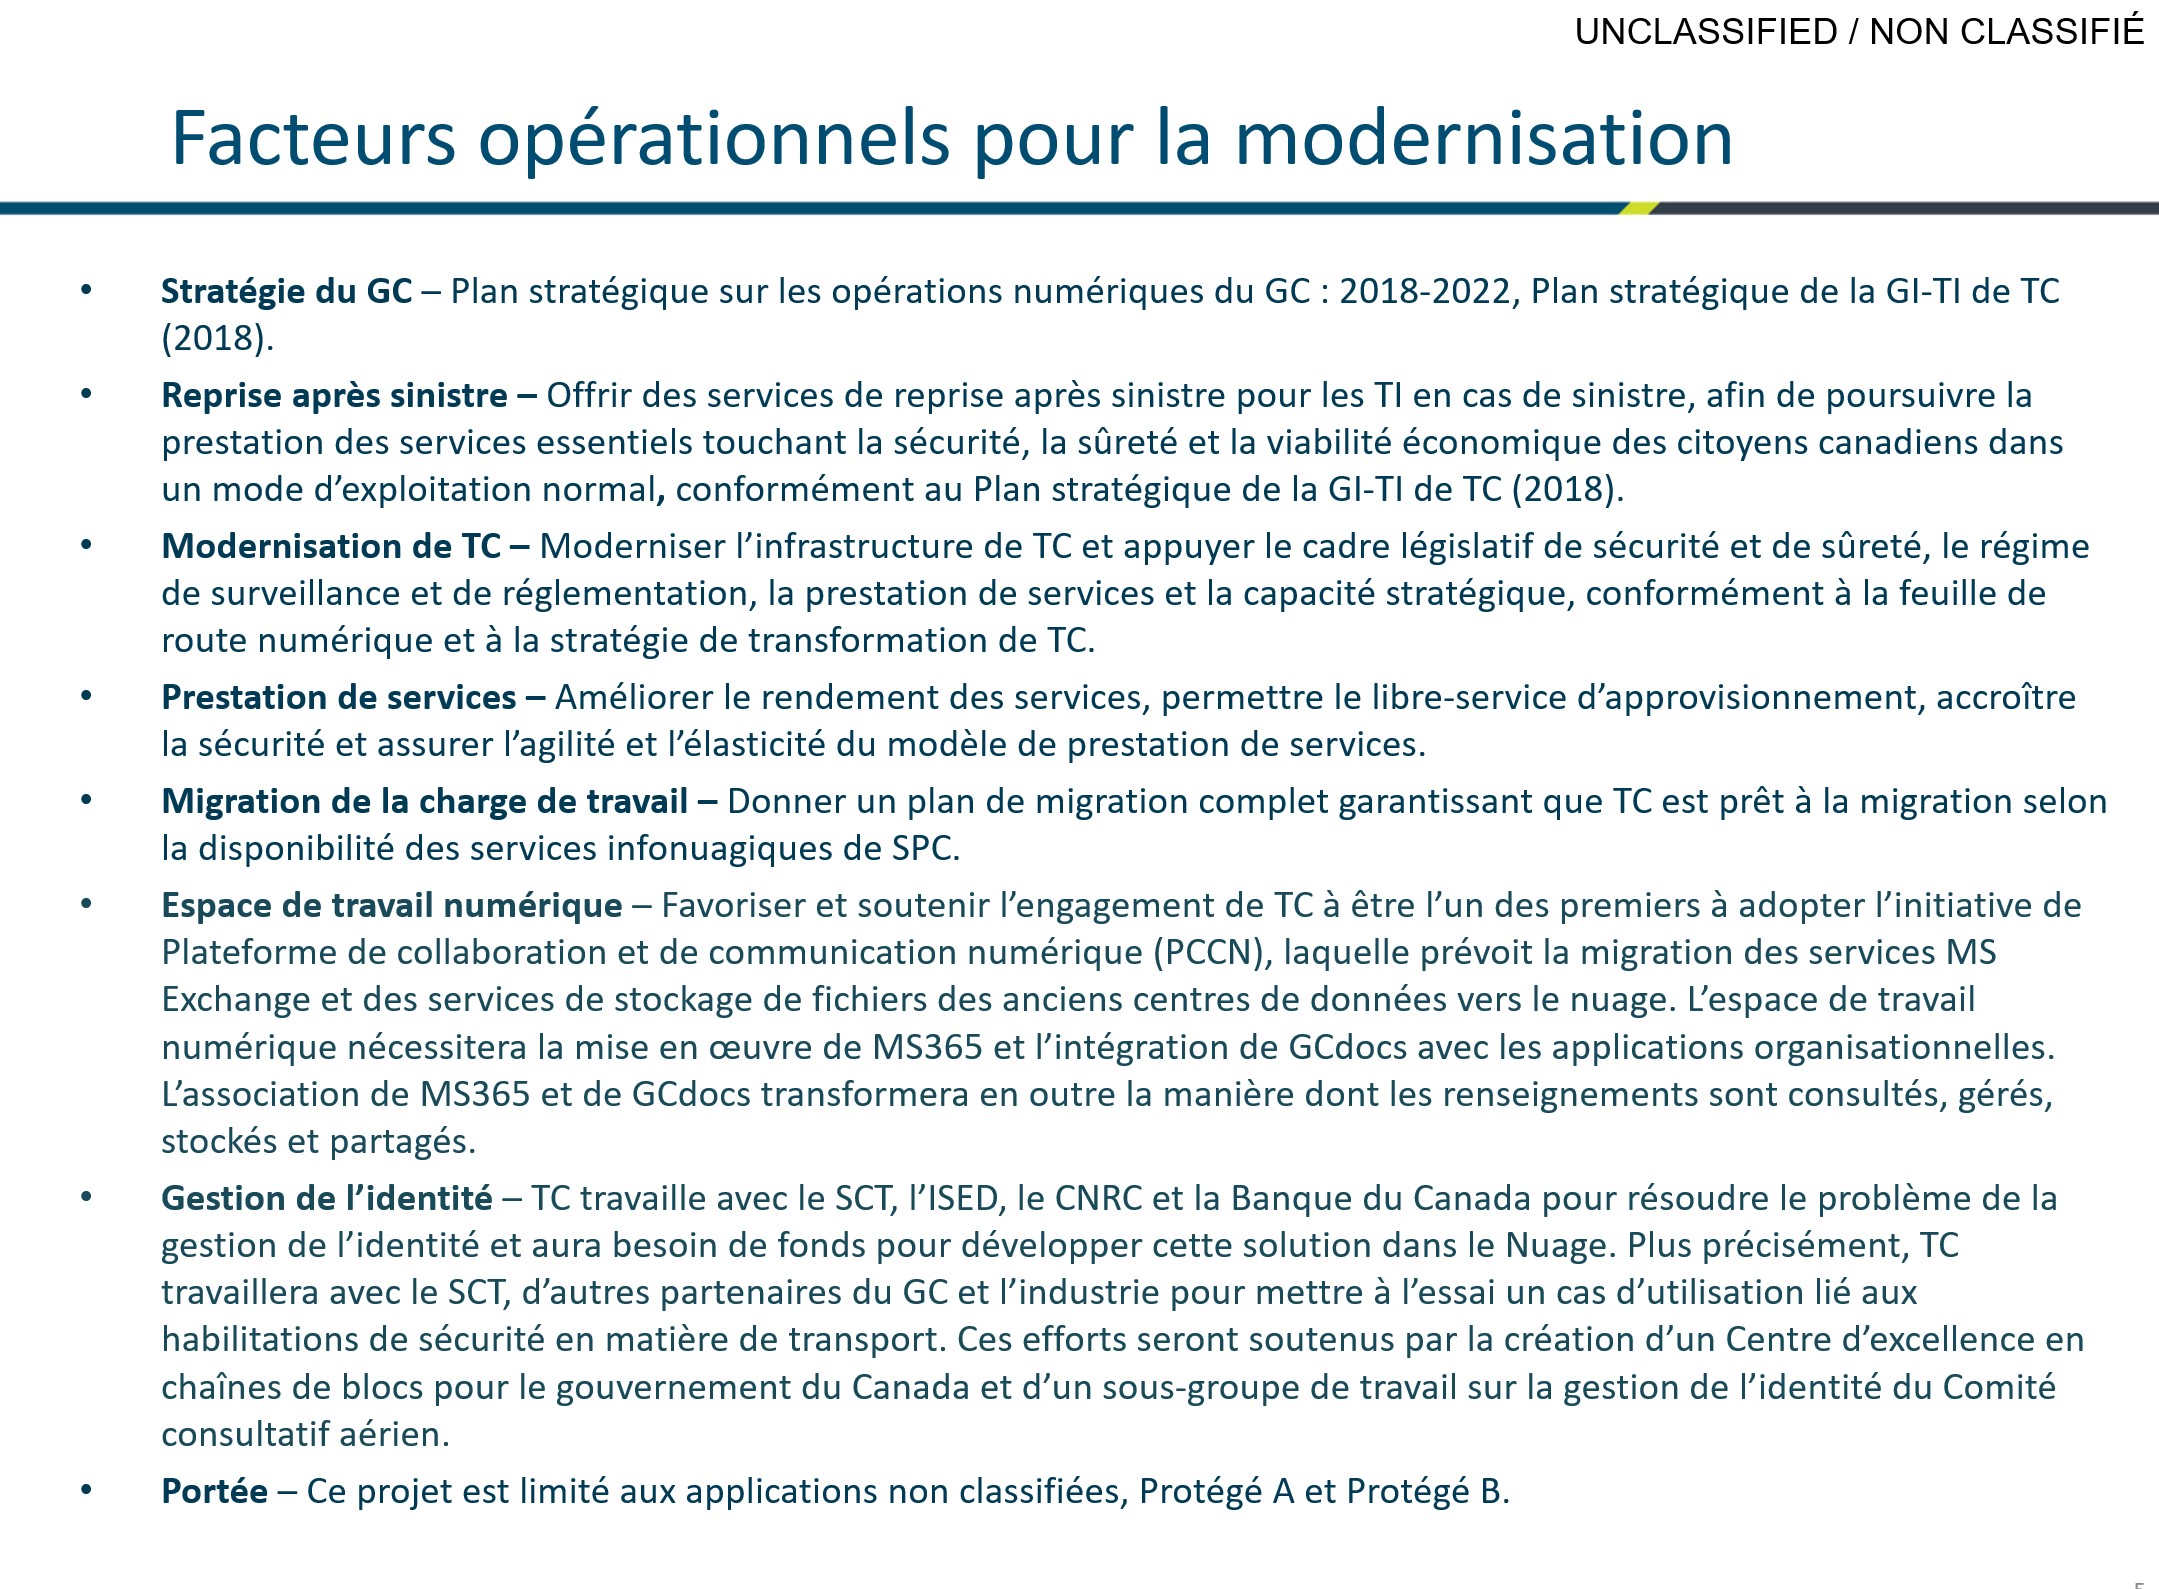 Facteurs-opérationnels-pour-la-modernisation-June2020.jpg